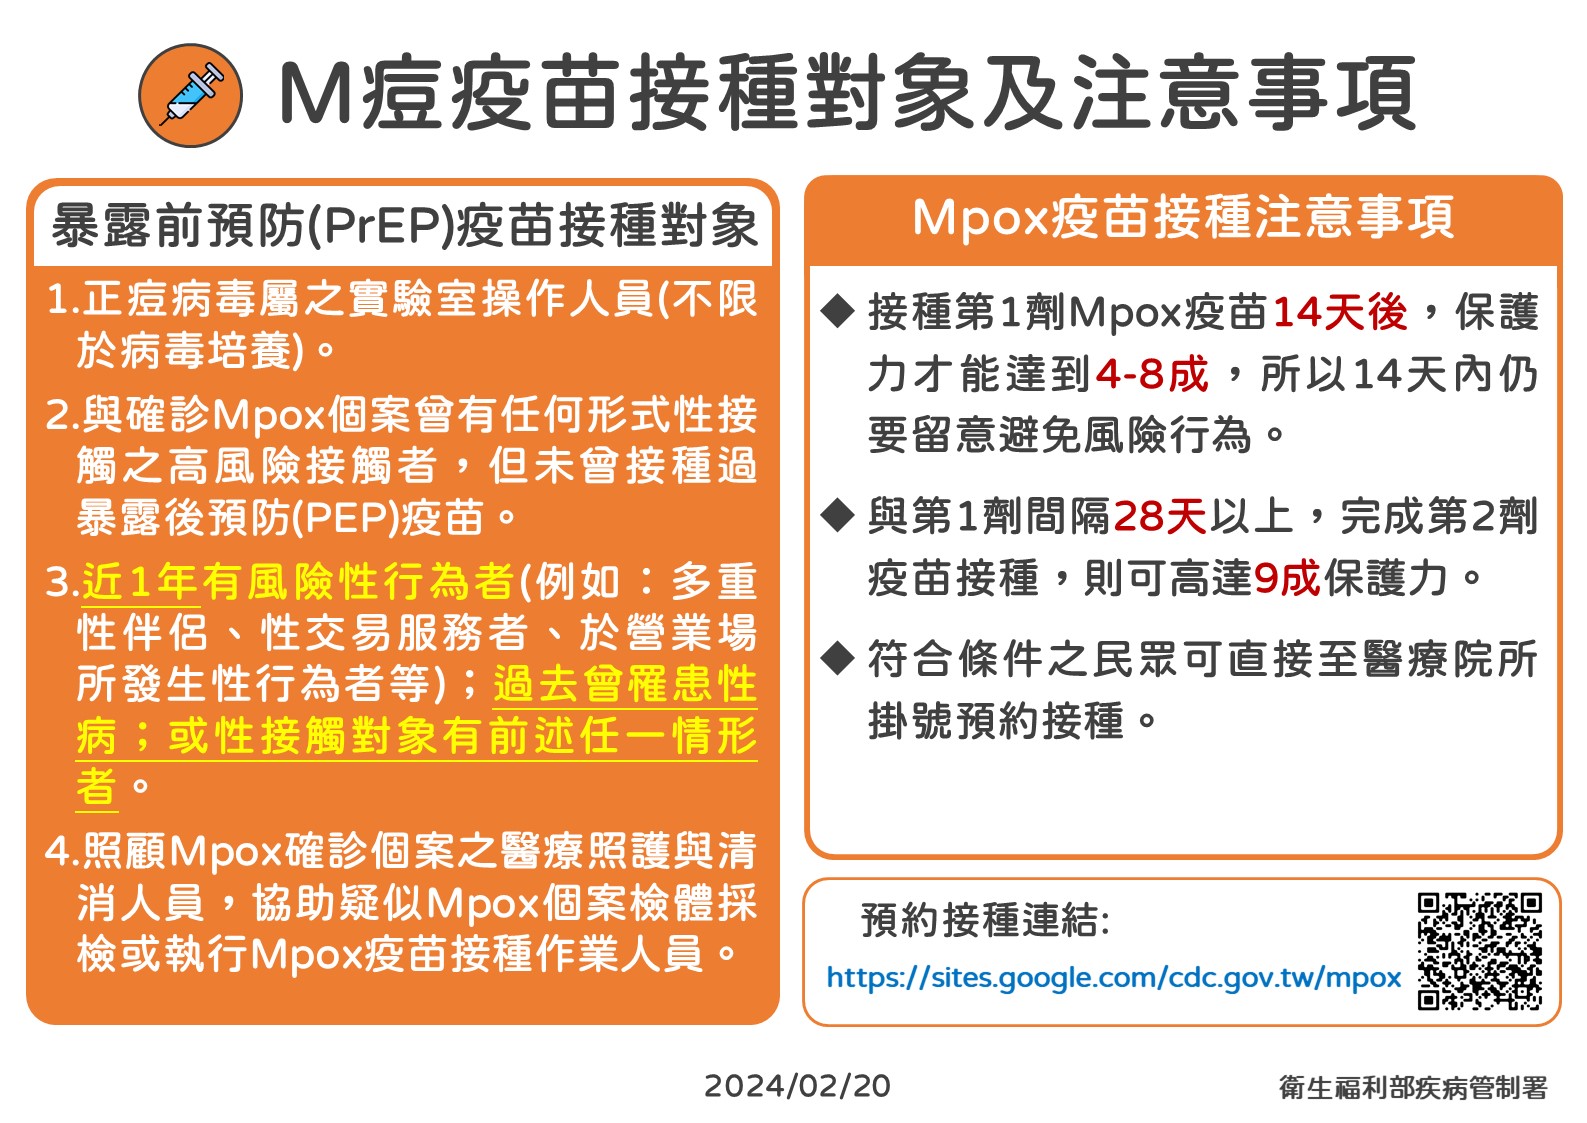 台灣剛宣布「消除M痘」成亞太第一國！ 馬上爆20歲男自中國帶病返台 11